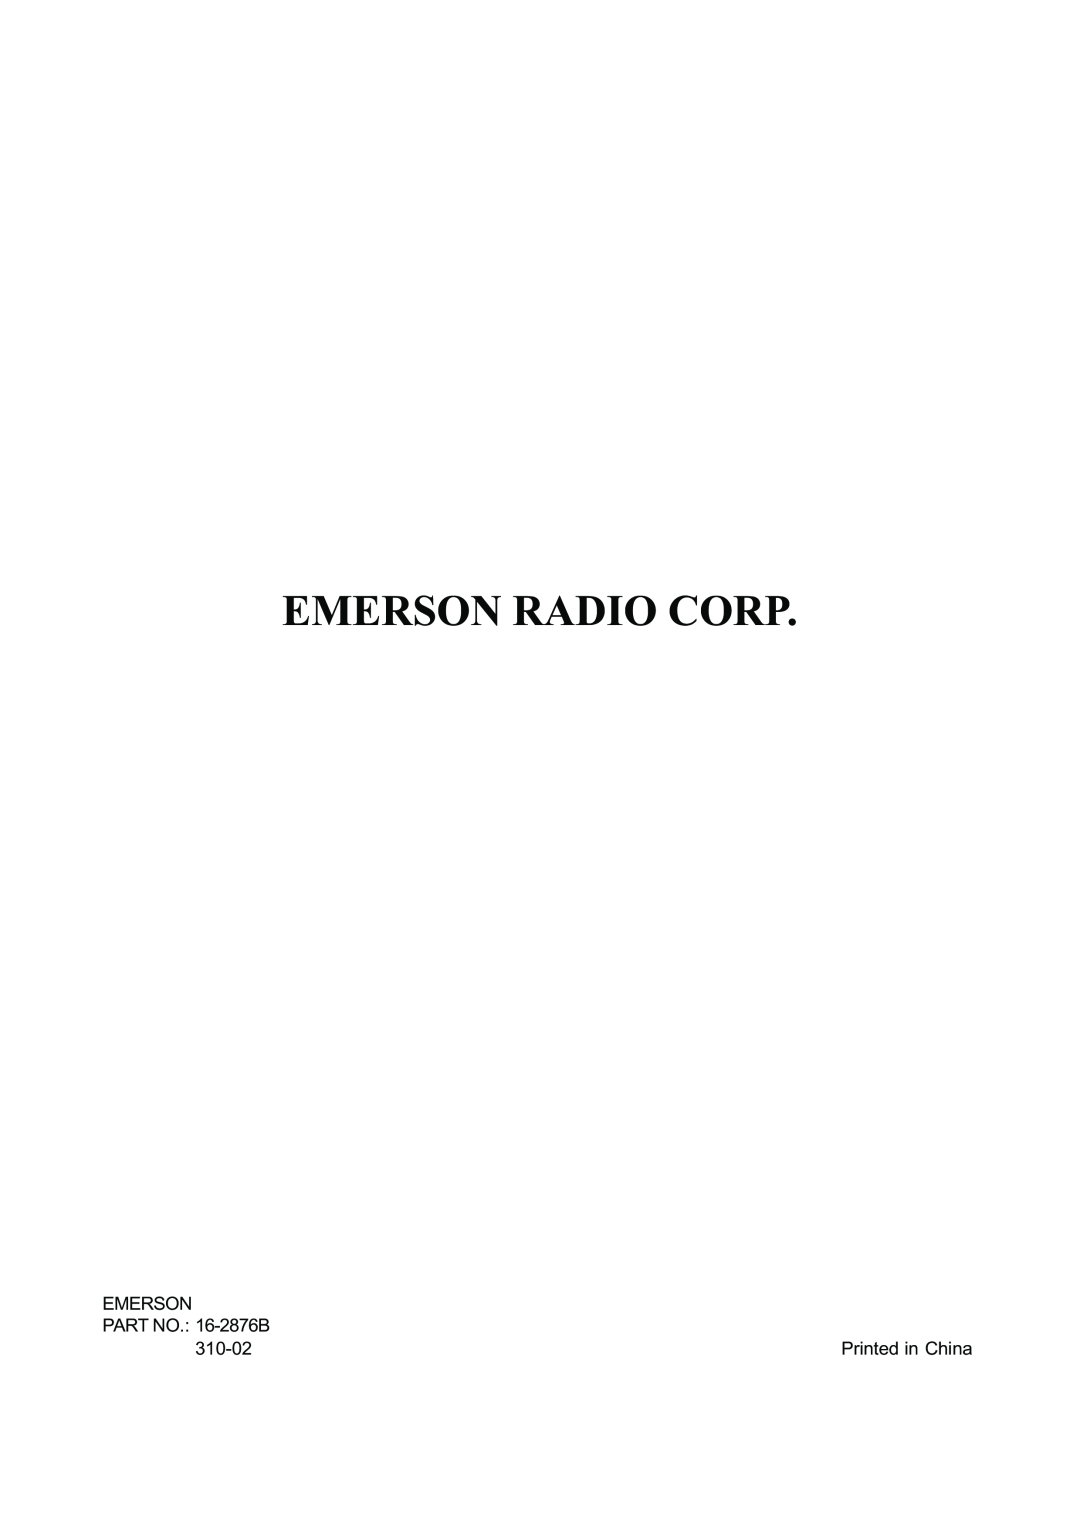 Emerson AV101 manual Emerson Radio Corp, PART NO. 16-2876B, 310-02 